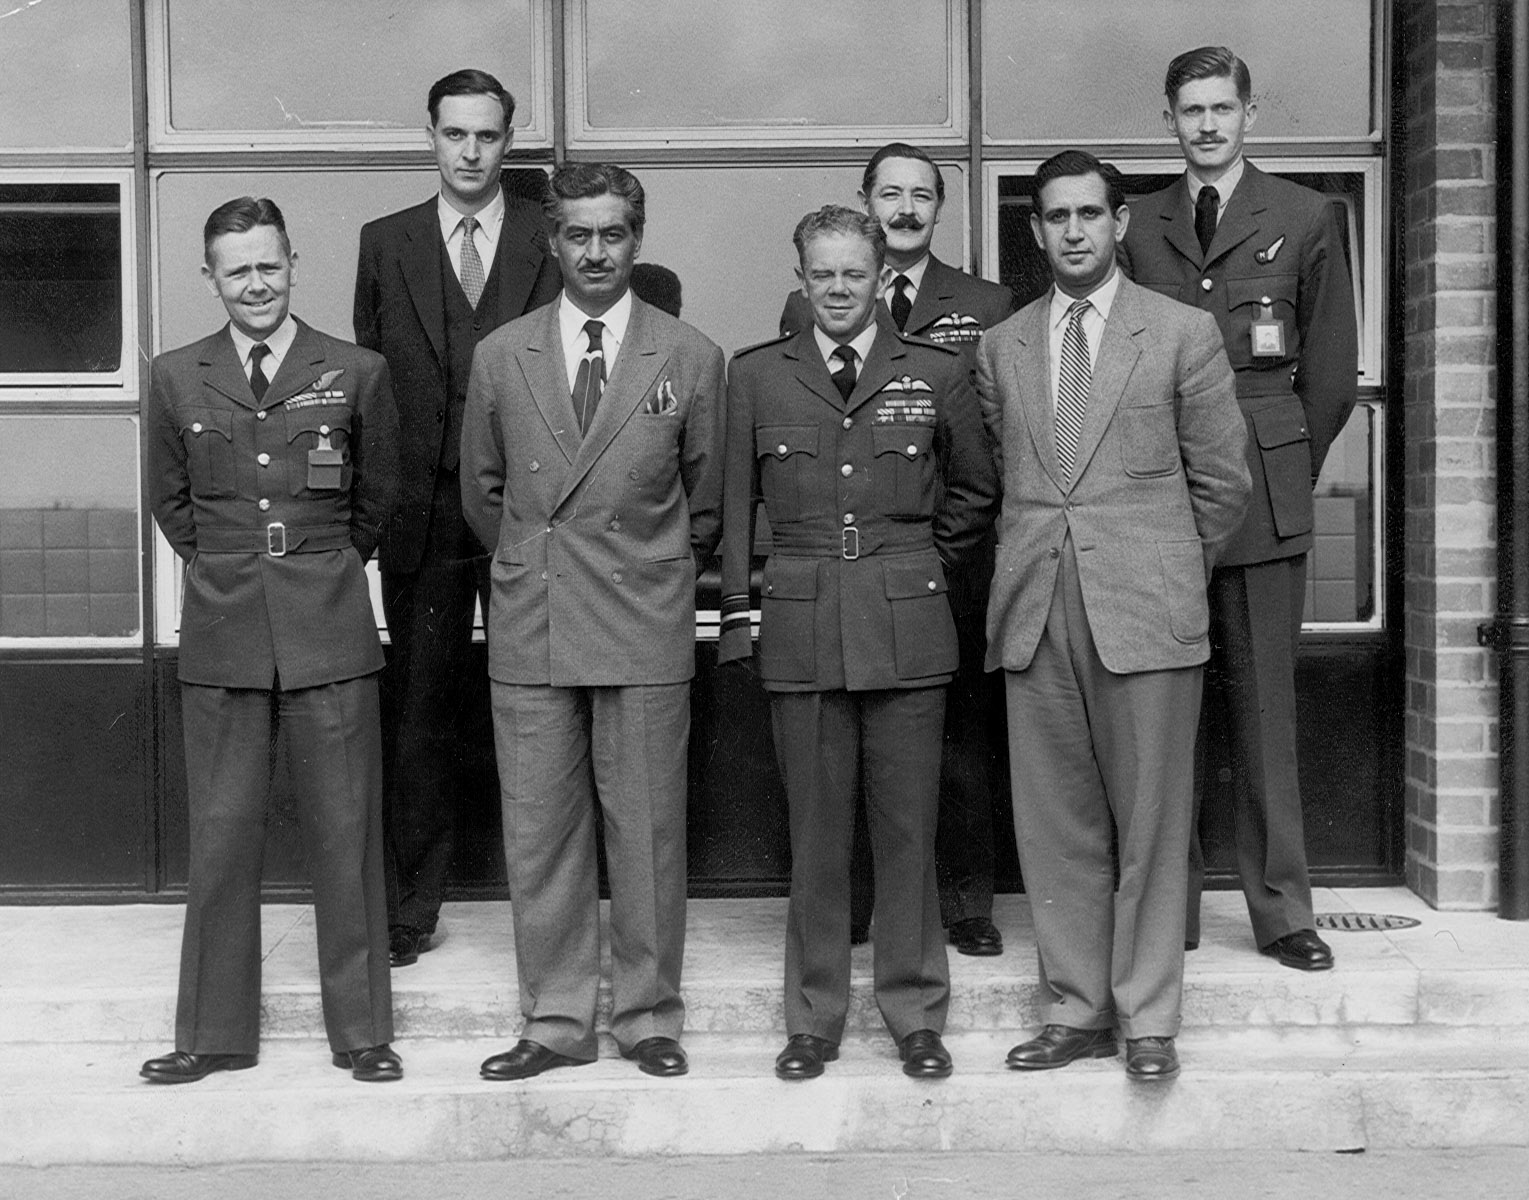 عکس شاپور ریپورتر و تیمور بختیار اولین رئیس ساواک و چند افسر آمریکایی